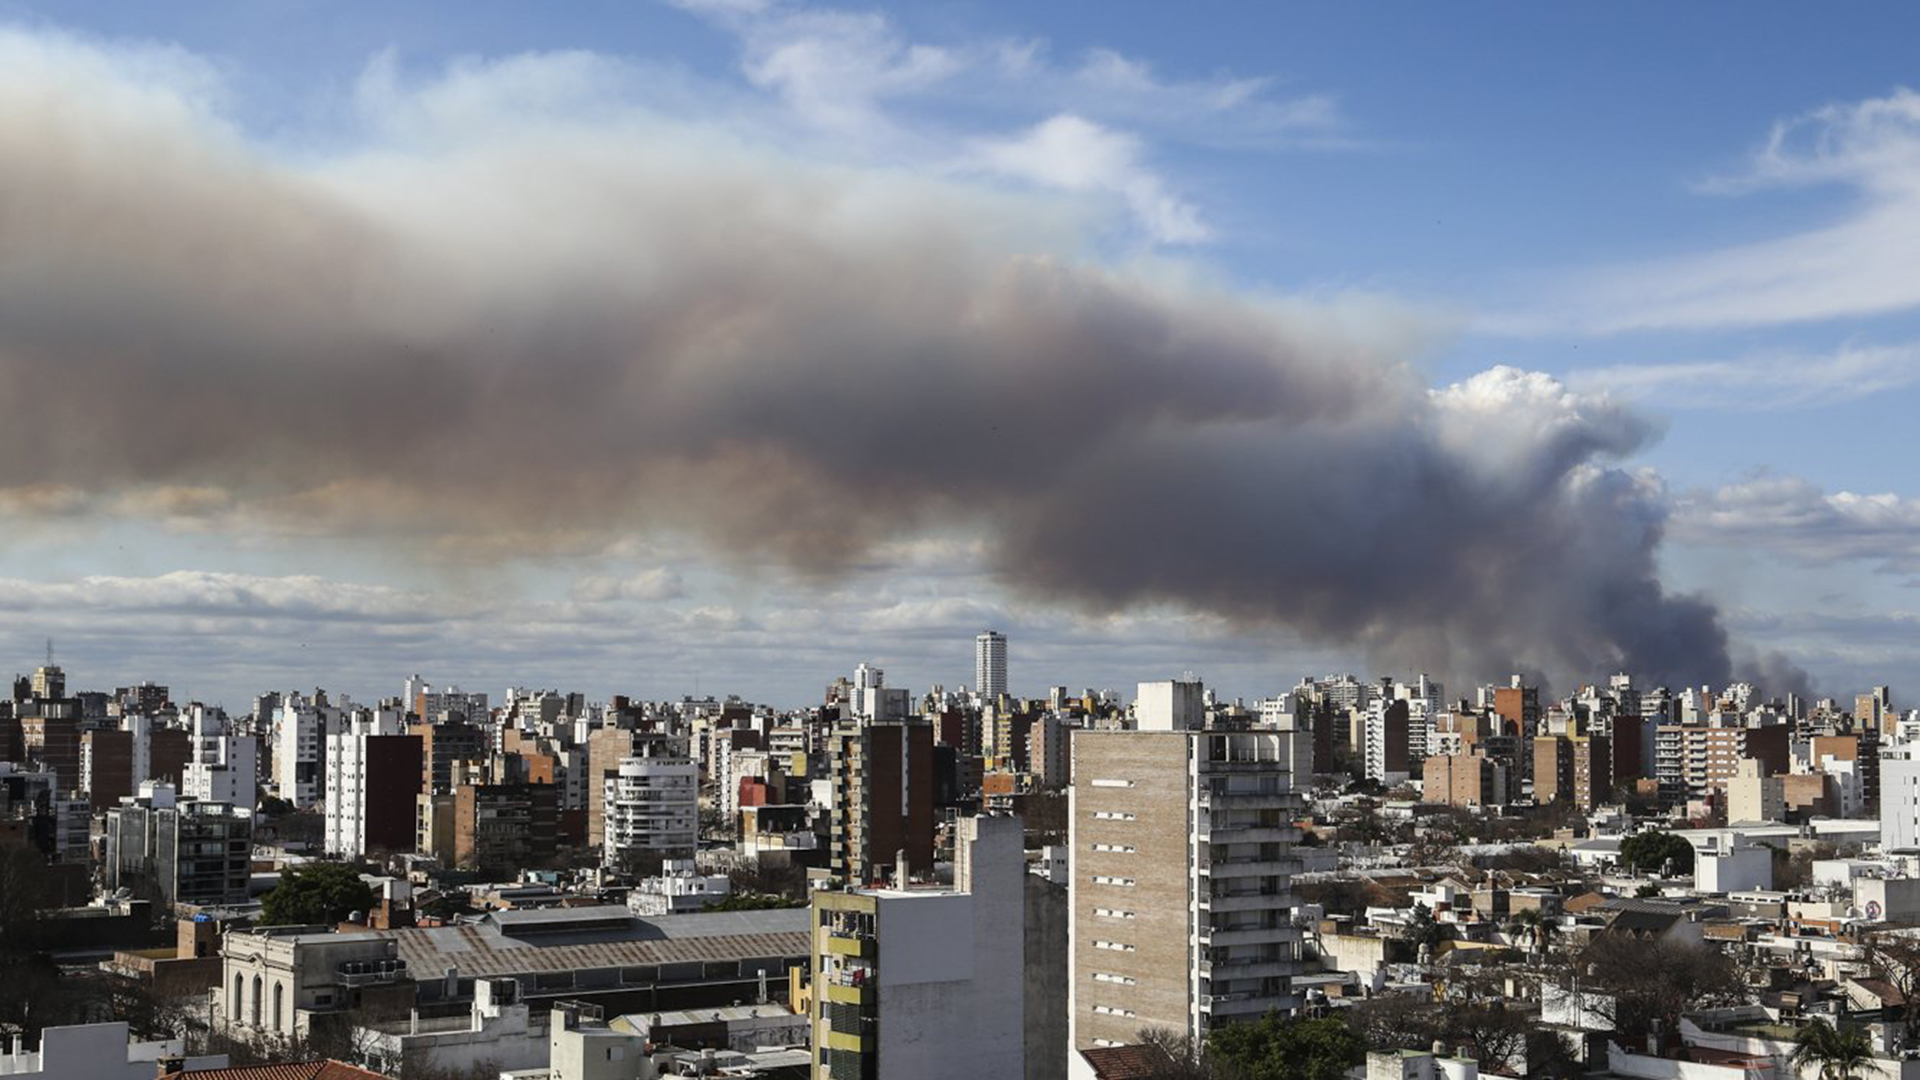 El humo llega a la ciudad de Rosario @Intibonomo